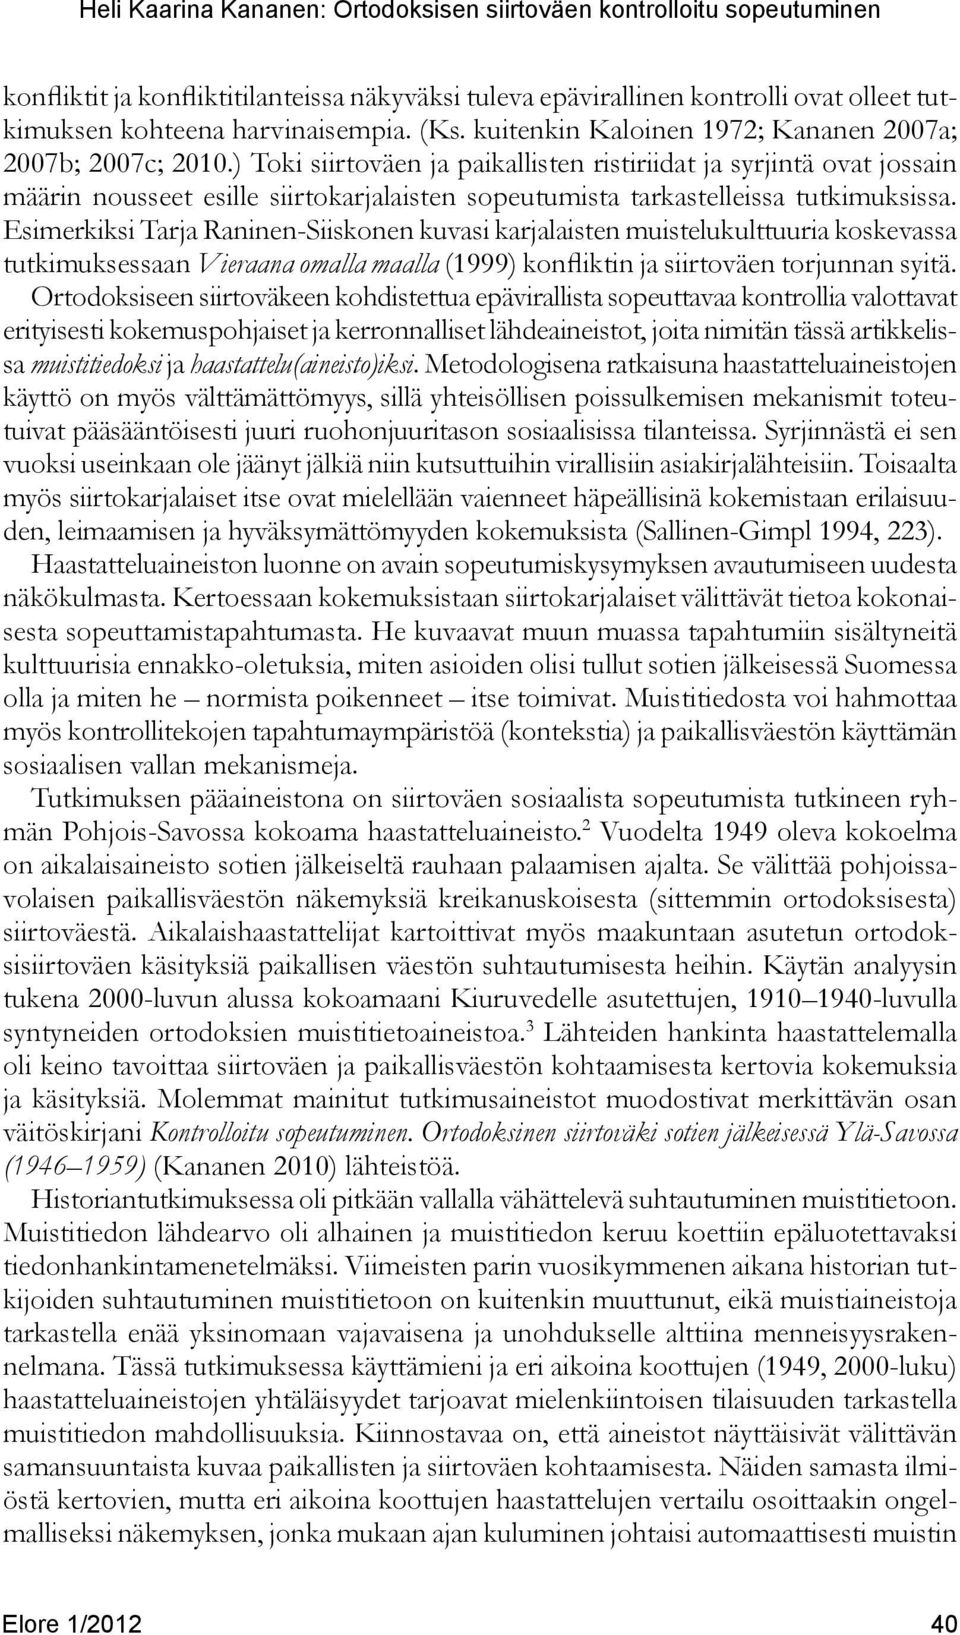 Esimerkiksi Tarja Raninen-Siiskonen kuvasi karjalaisten muistelukulttuuria koskevassa tutkimuksessaan Vieraana omalla maalla (1999) konfliktin ja siirtoväen torjunnan syitä.